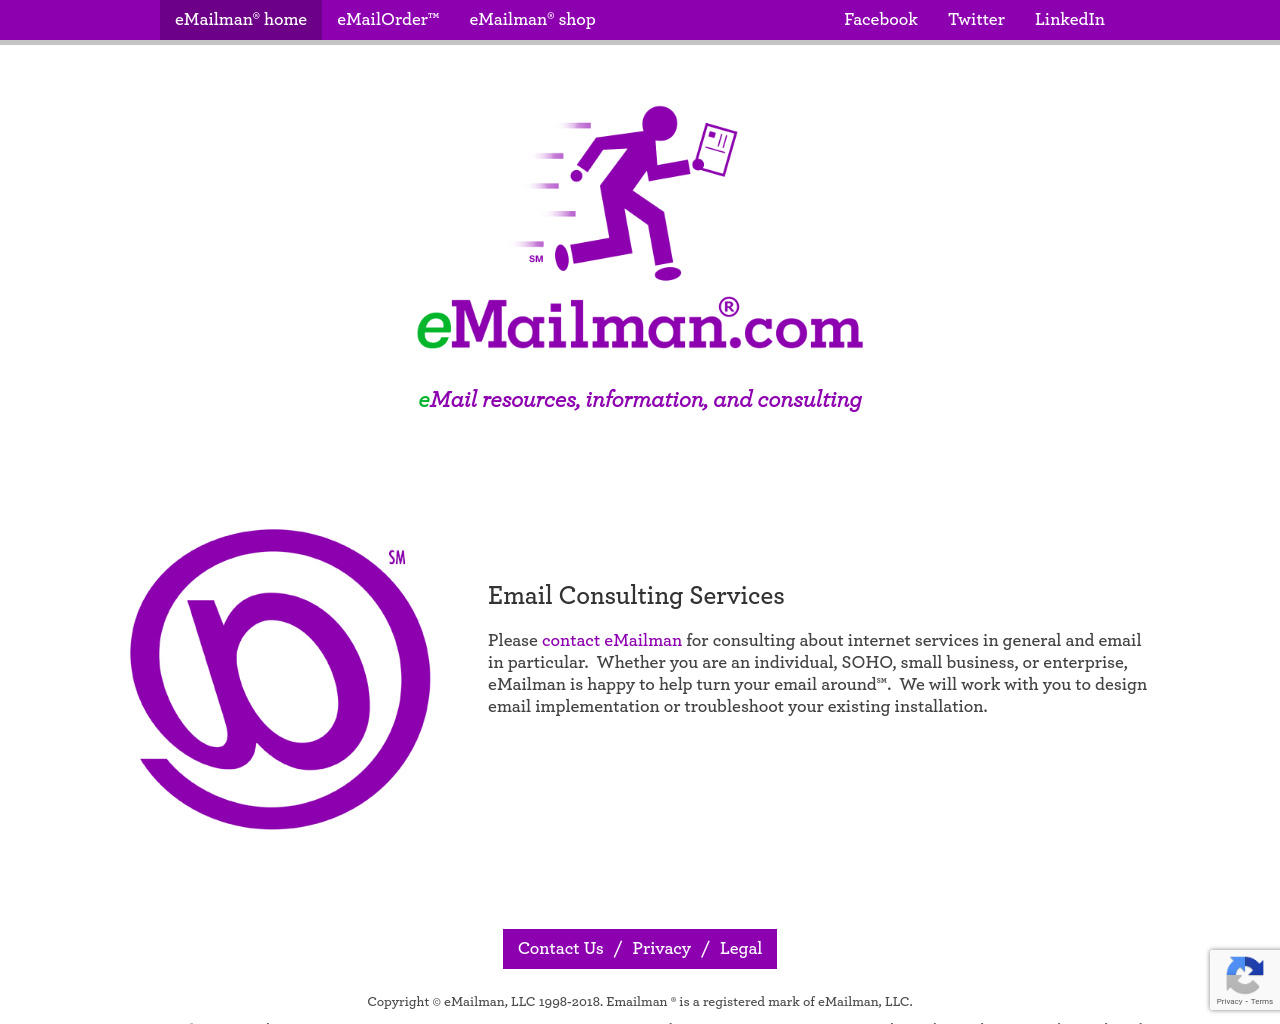 emailman.com